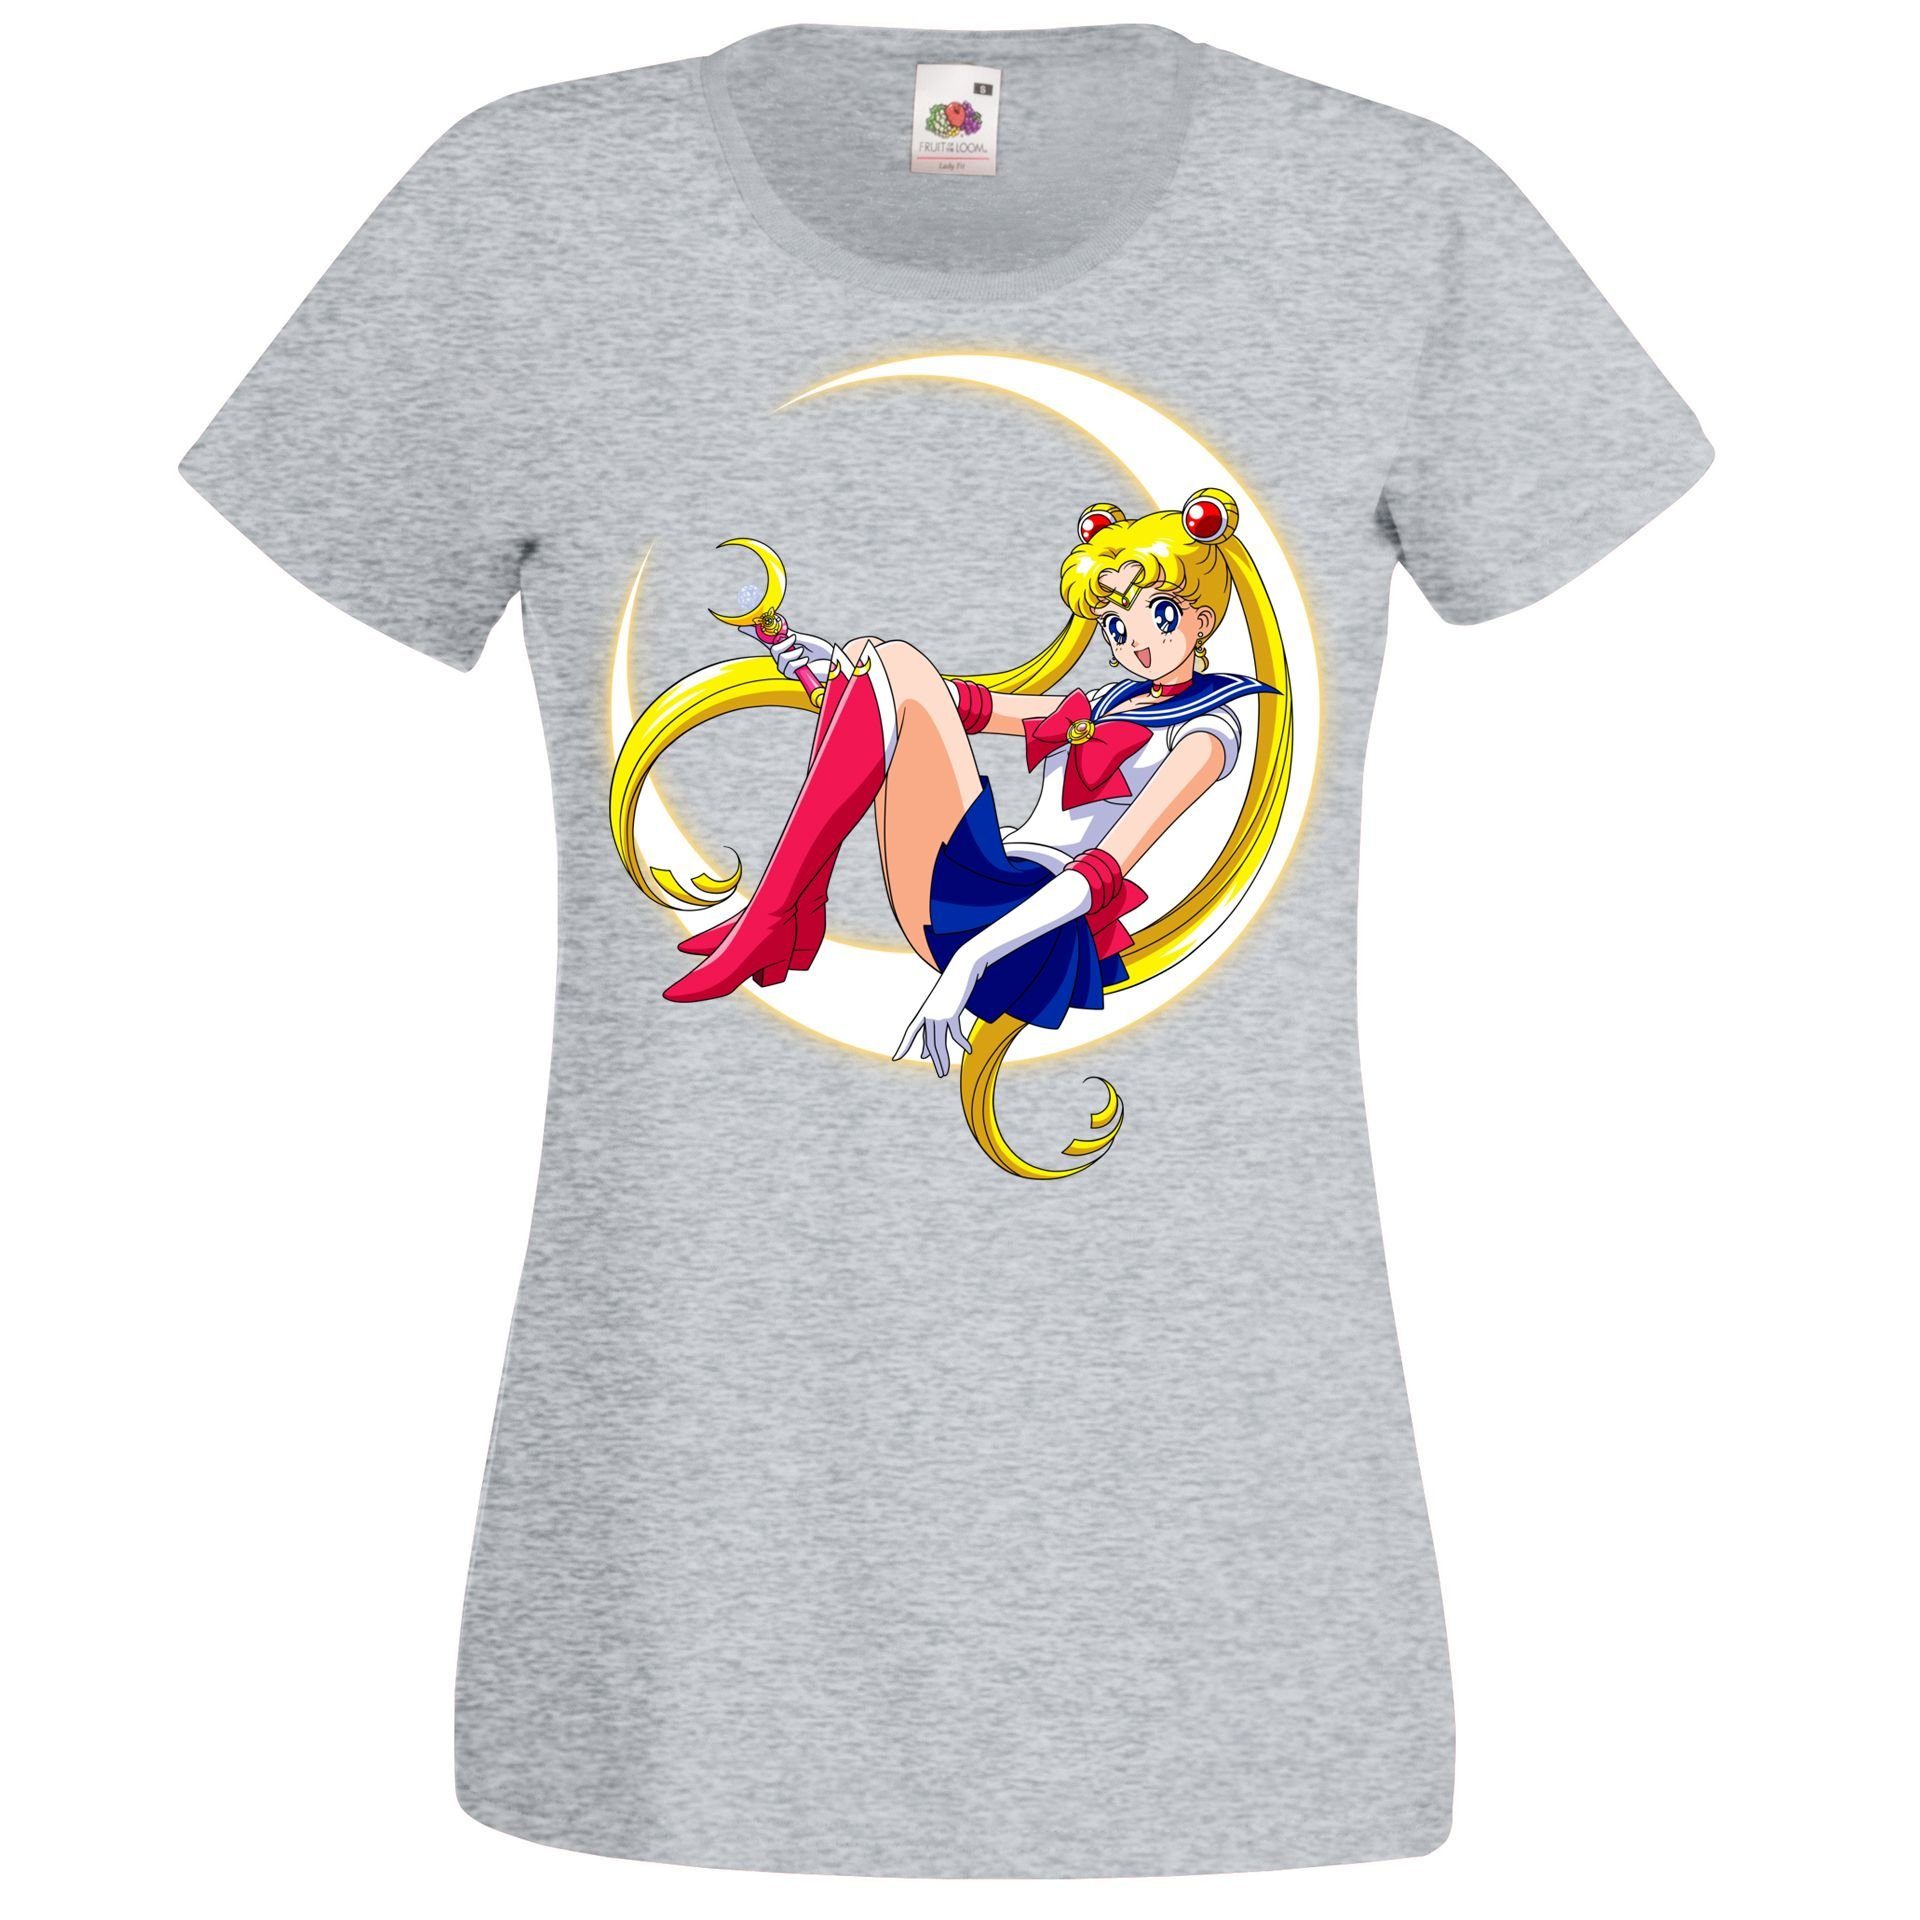 Frontprint Damen Mit Moon T-Shirt trendigem Designz Sailor T-Shirt Grau Youth